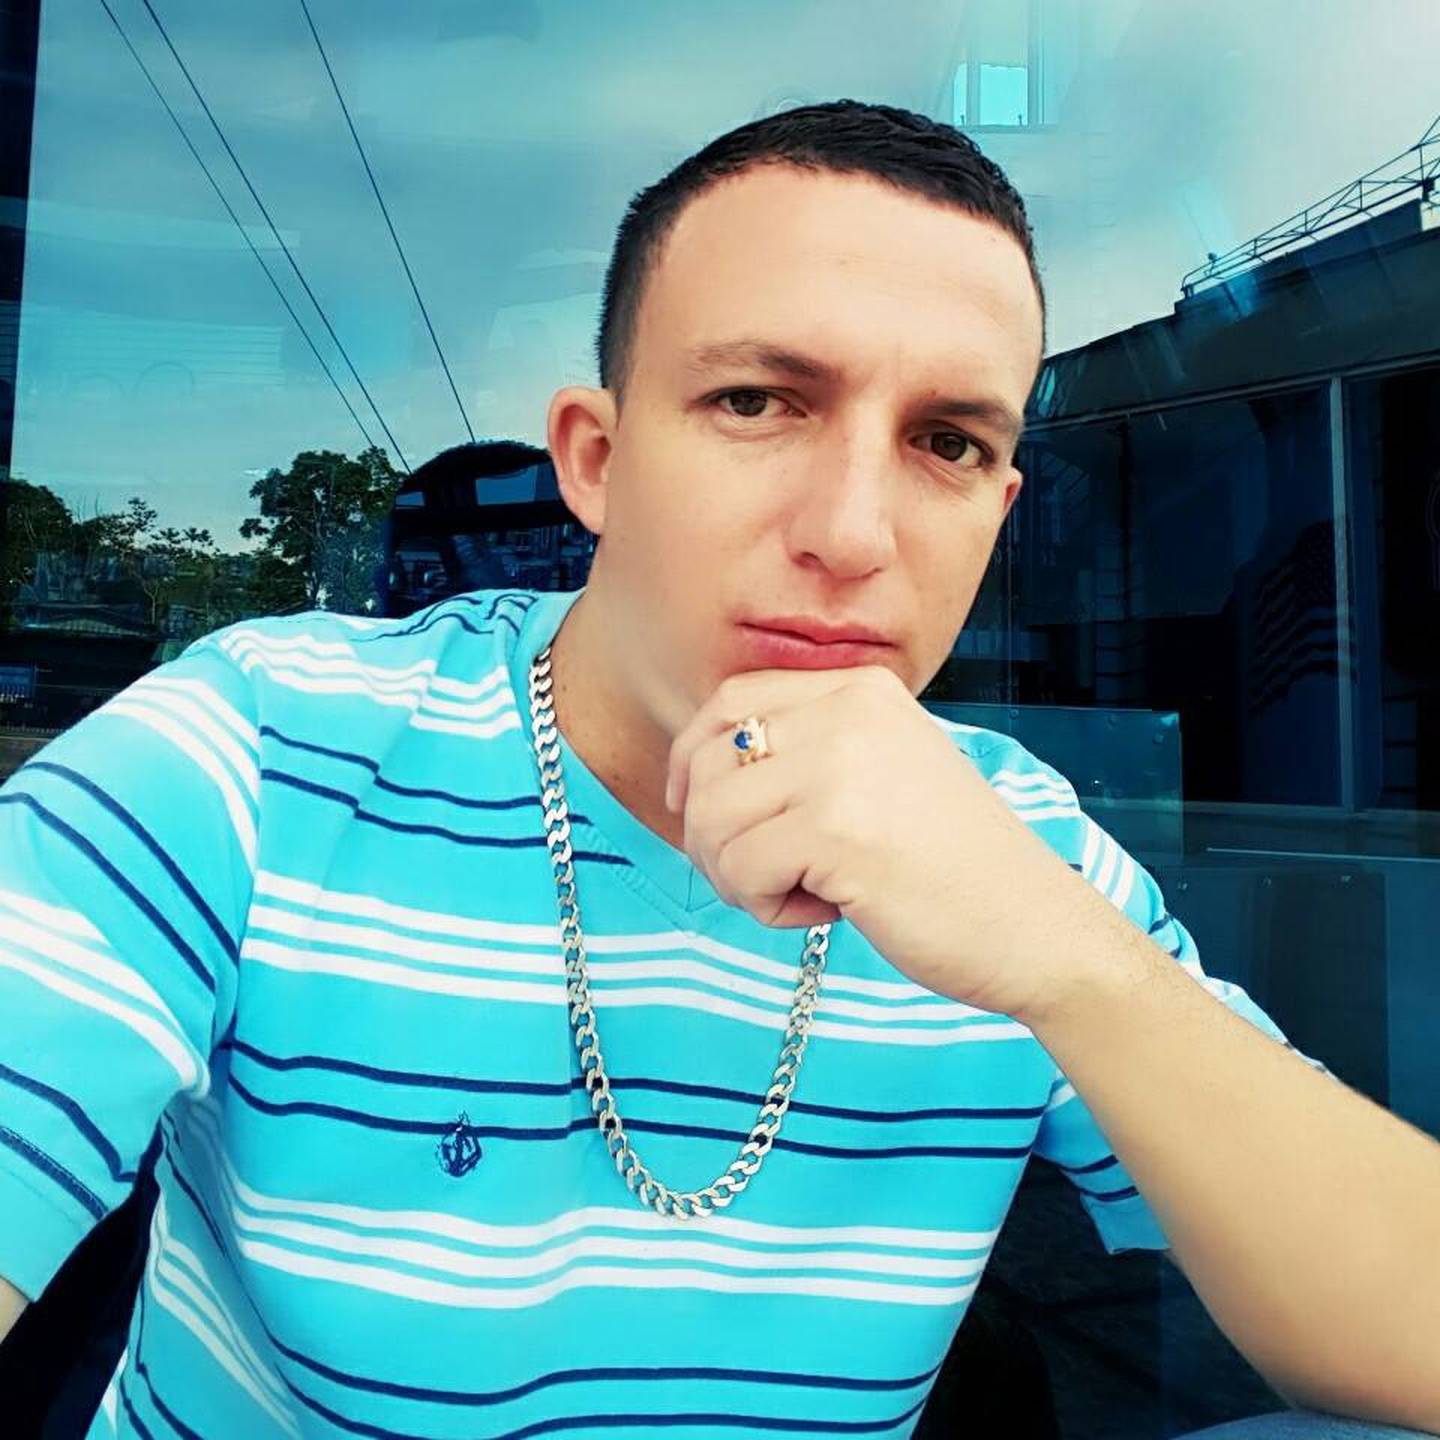 Randall Barquero Parajeles, joven que falleció en accidente de tránsito en la Uruca. Foto tomada de Facebook.